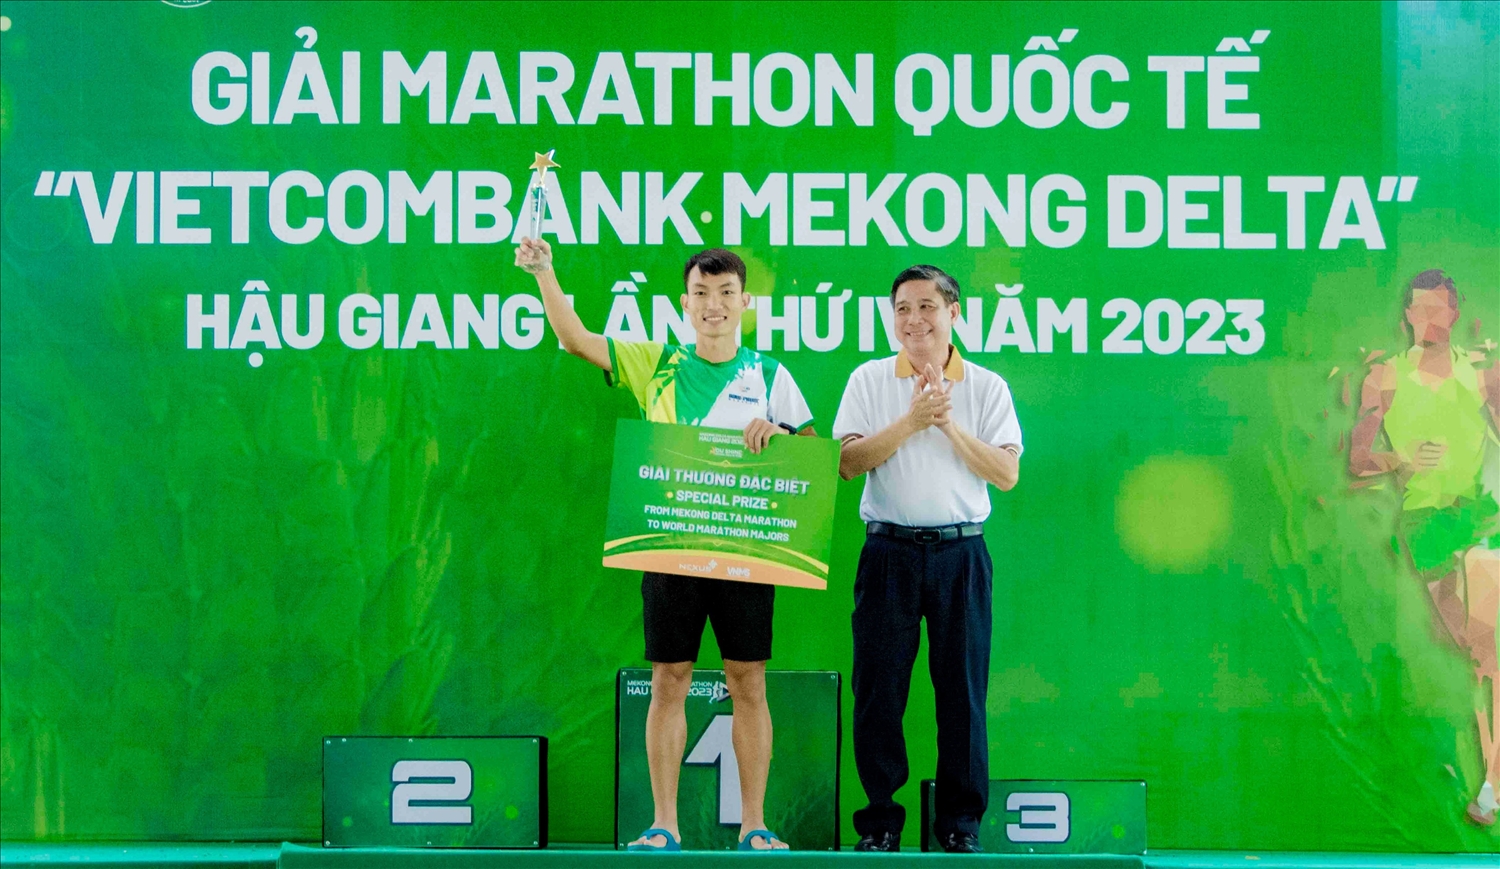 Ông Đồng Văn Thanh, Chủ tịch UBND tỉnh Hậu Giang trao giải đặc biệt cho VĐV về nhất cự ly 42km